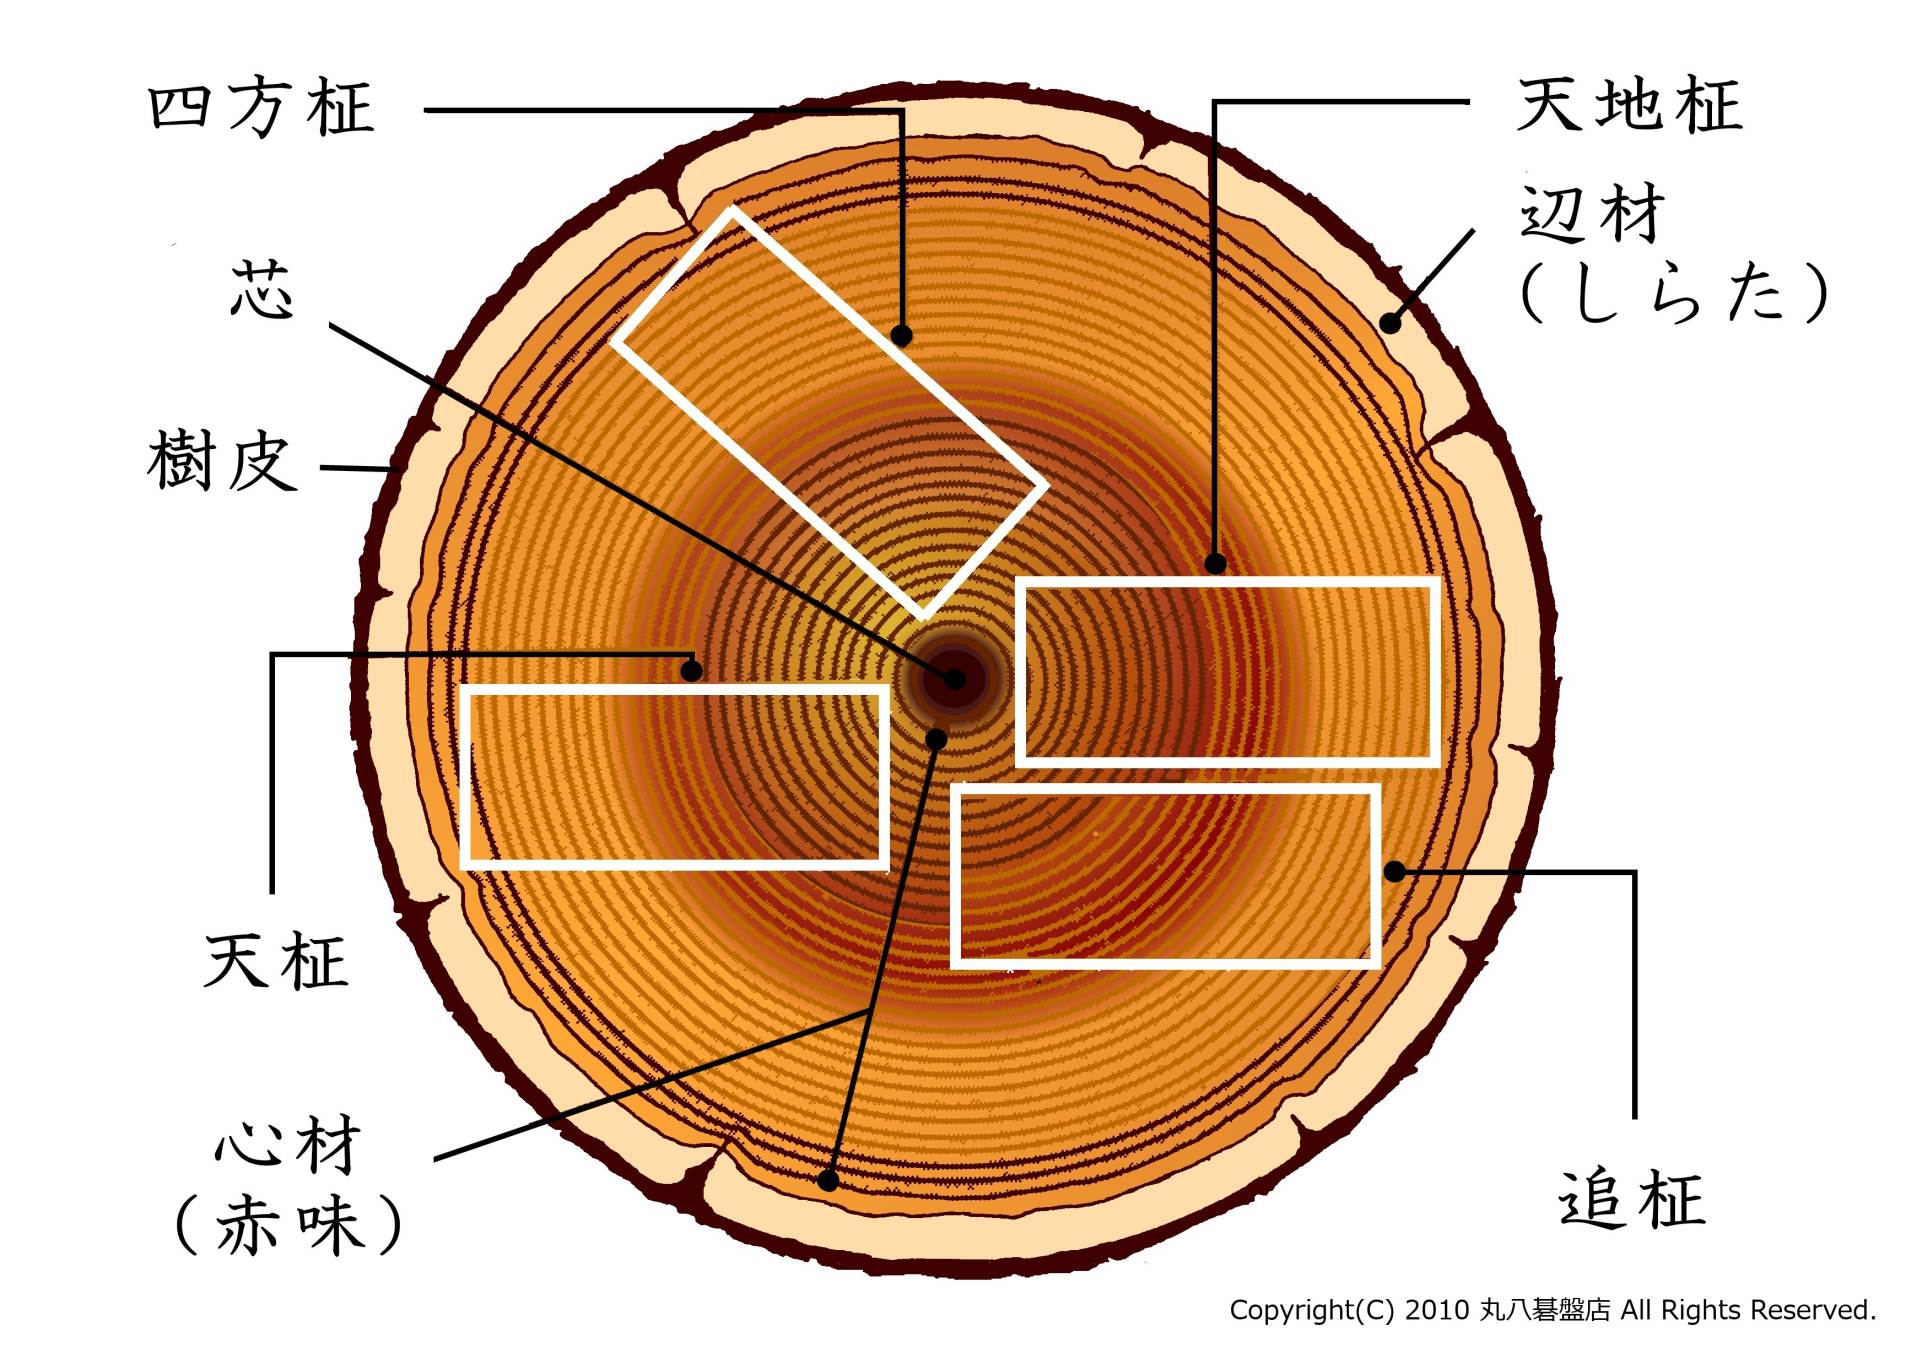 囲碁盤 天地柾 柾目 美杢目 約17.5cm 天然木